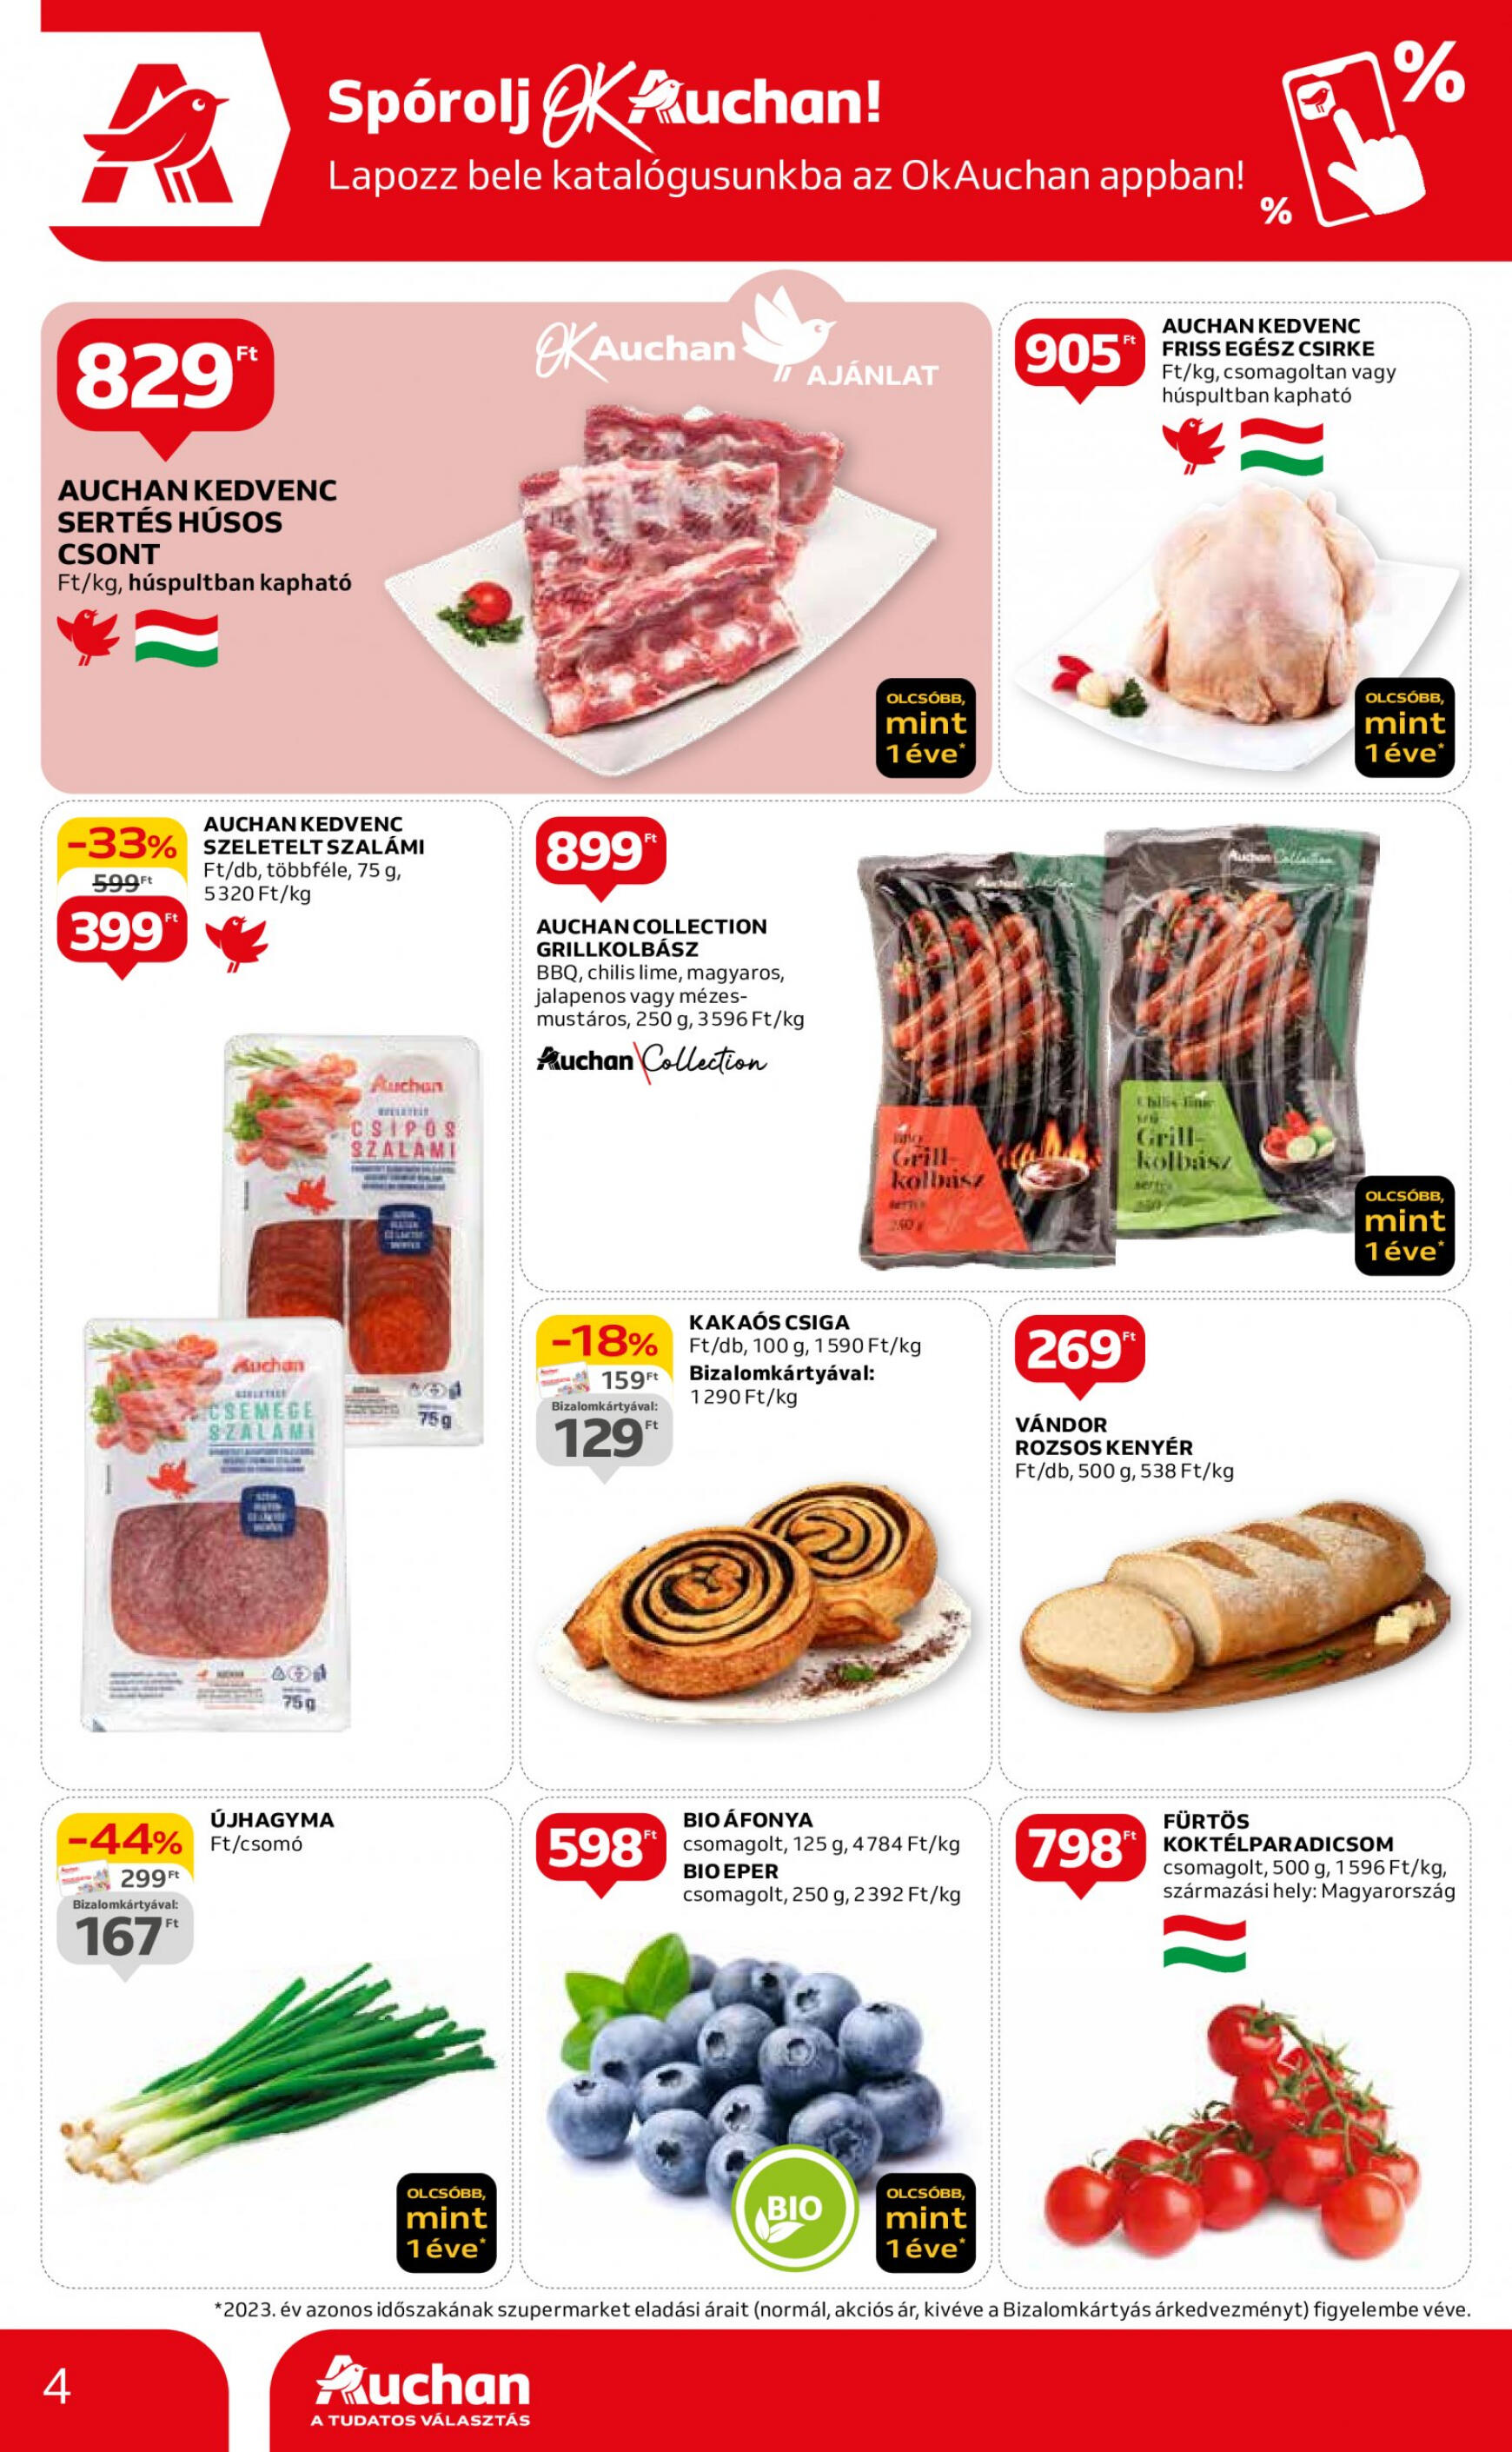 auchan - Aktuális újság Auchan szupermarket 04.18. - 04.24. - page: 4